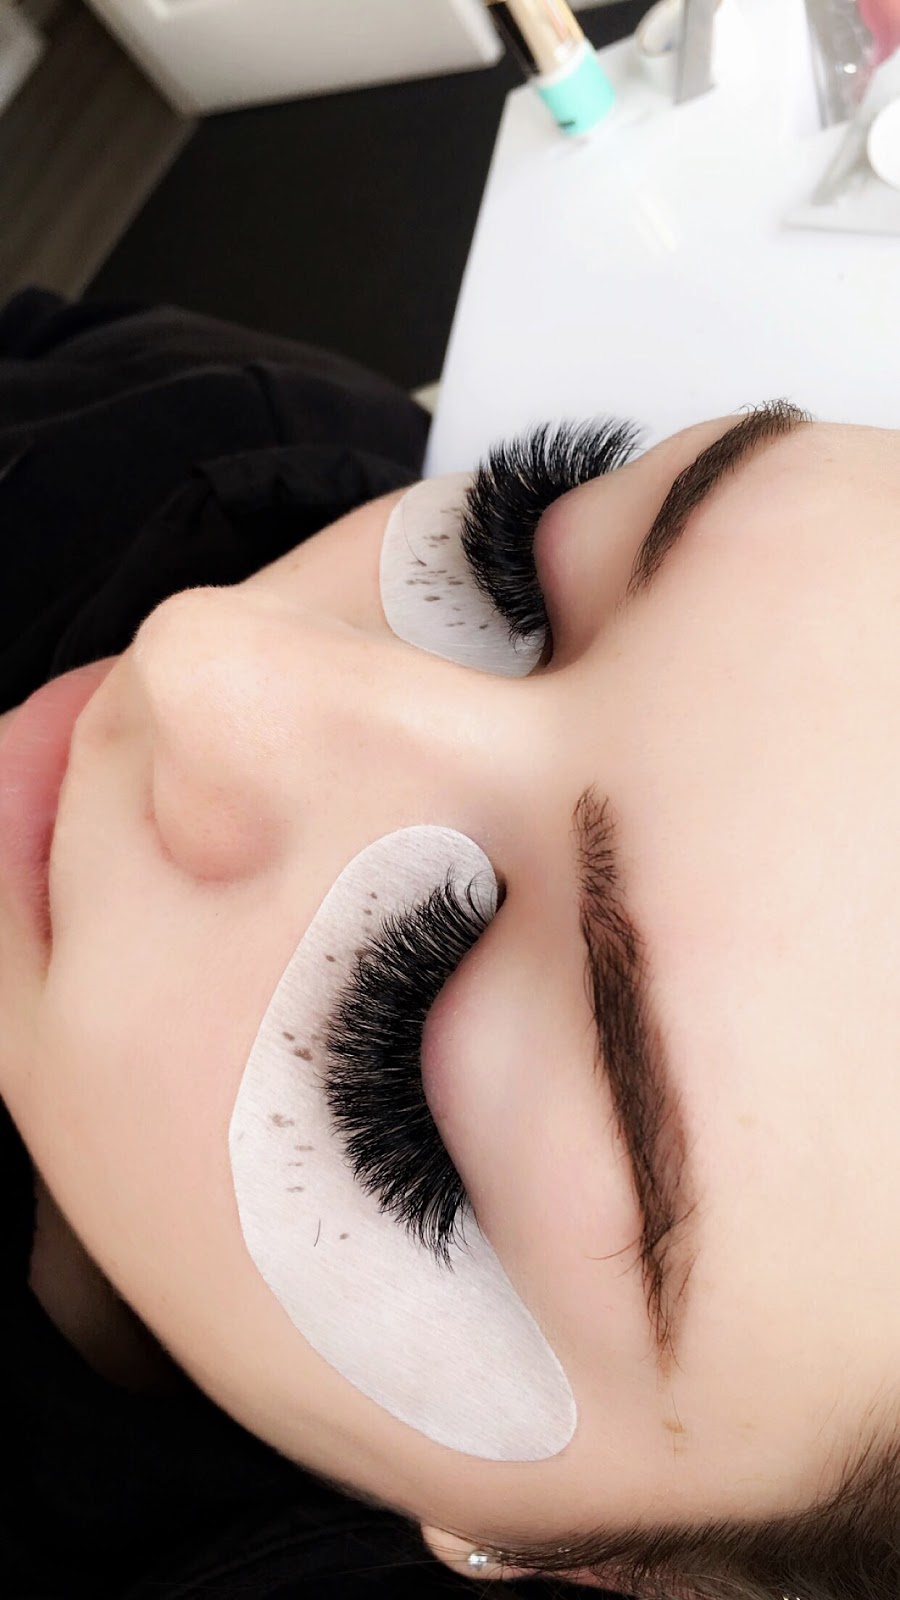 Luxe Beauty lash artist | beauty salon | 10 OBrien Rd, Londonderry NSW 2753, Australia | 0434114033 OR +61 434 114 033